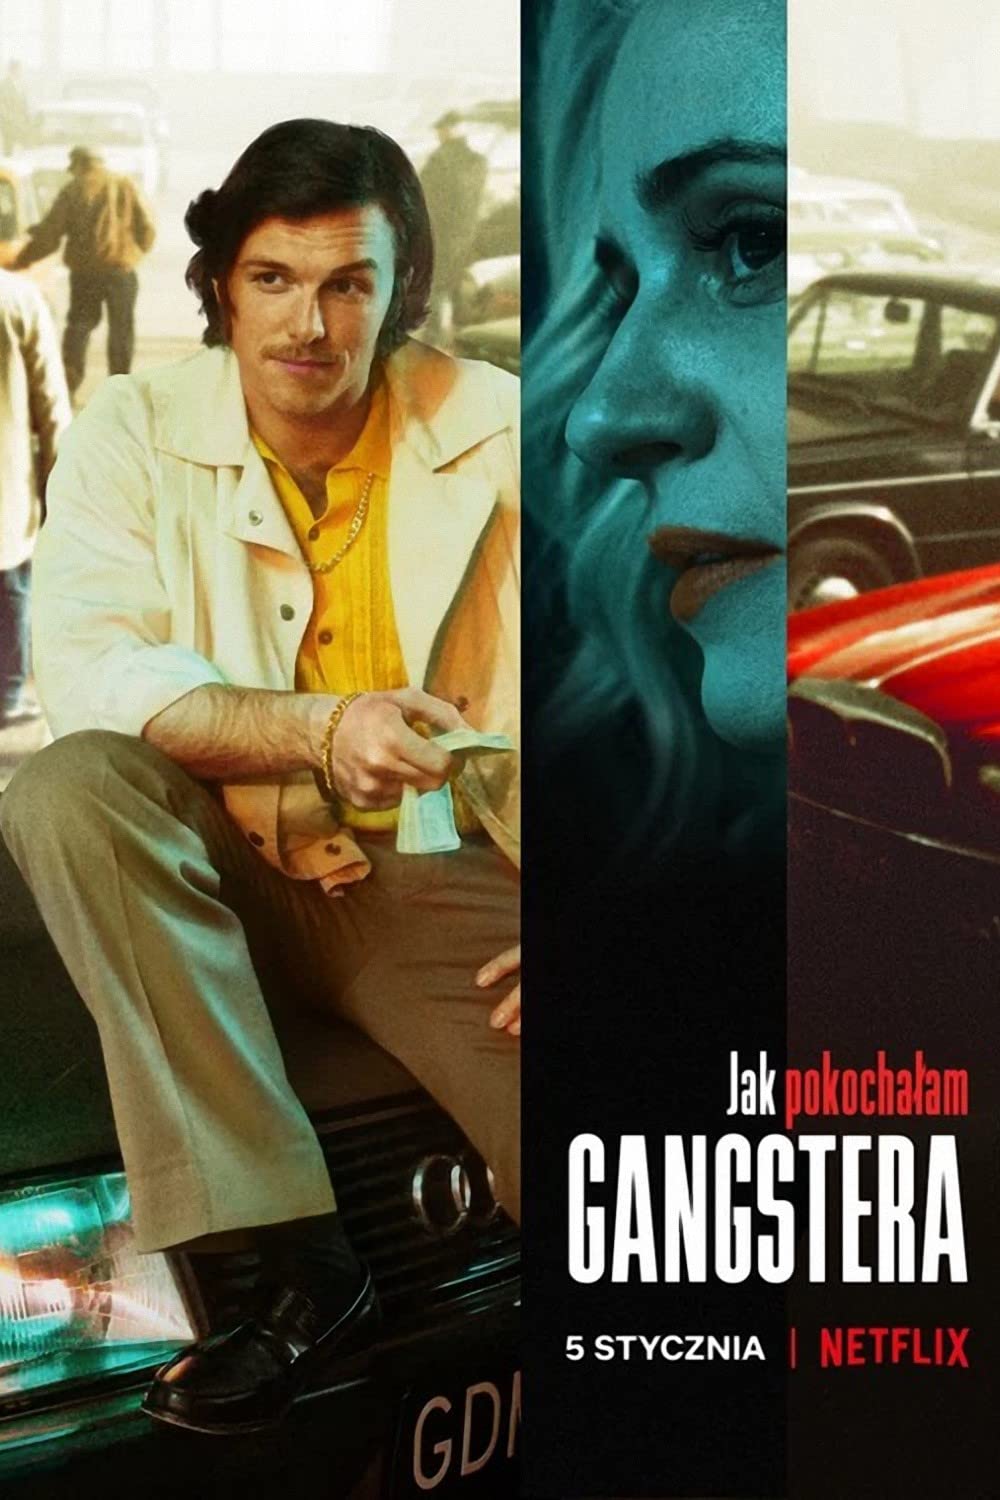 ดูหนังออนไลน์ ดูหนังใหม่ NETFLIX How I Fell in Love with a Gangster 2022 วิถีรักมาเฟีย movie678